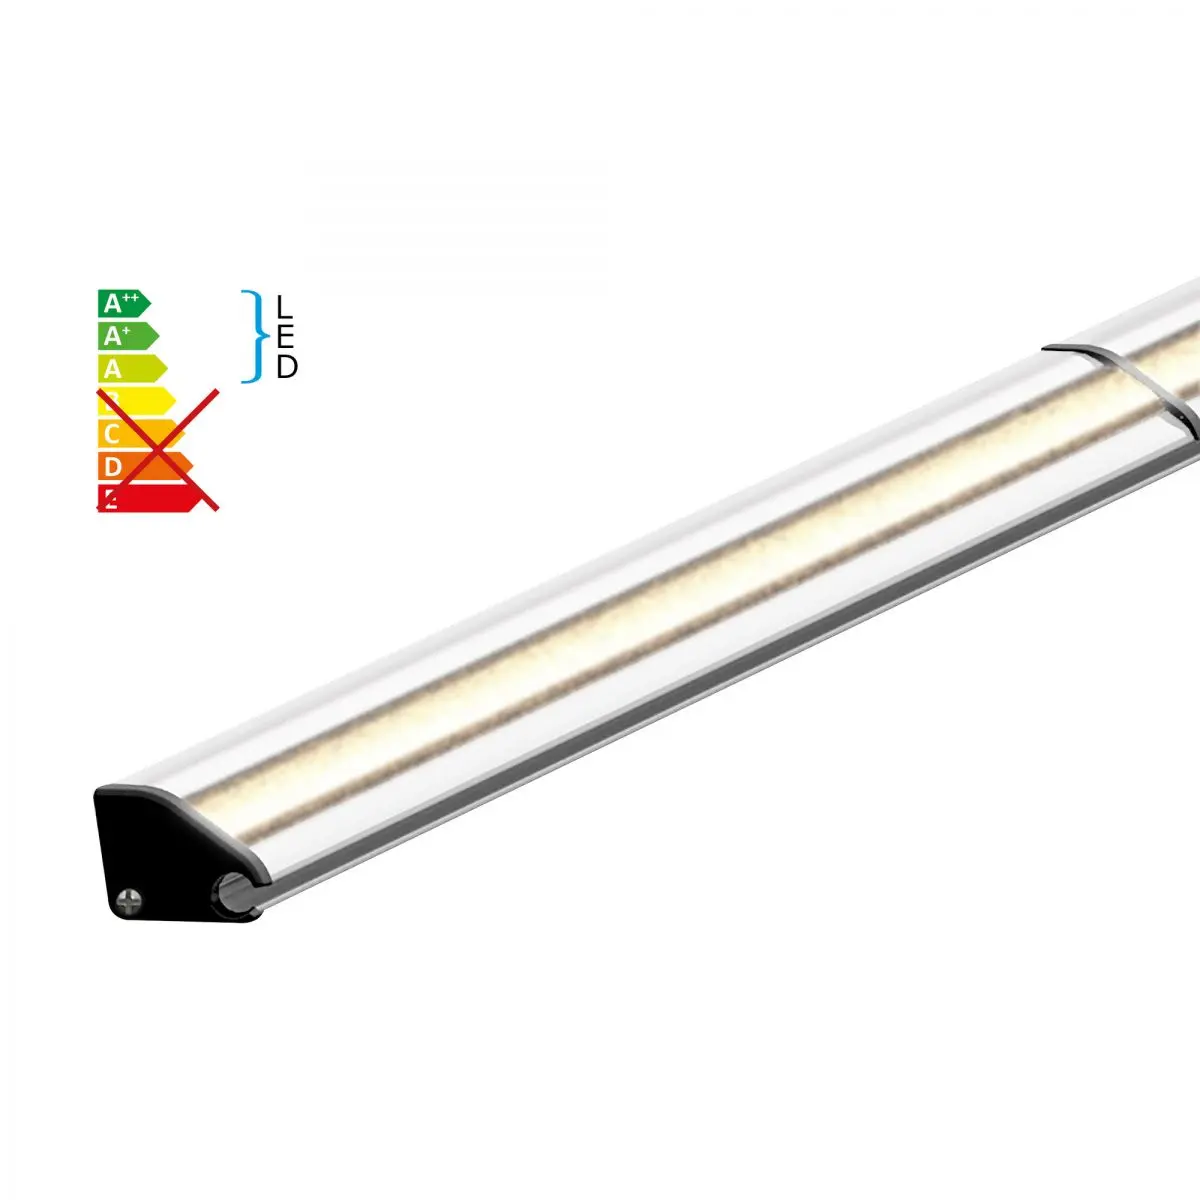 Benzi LED inclusiv profile din aluminiu pentru copertine Dometic seria 1, lungime 3,5 m